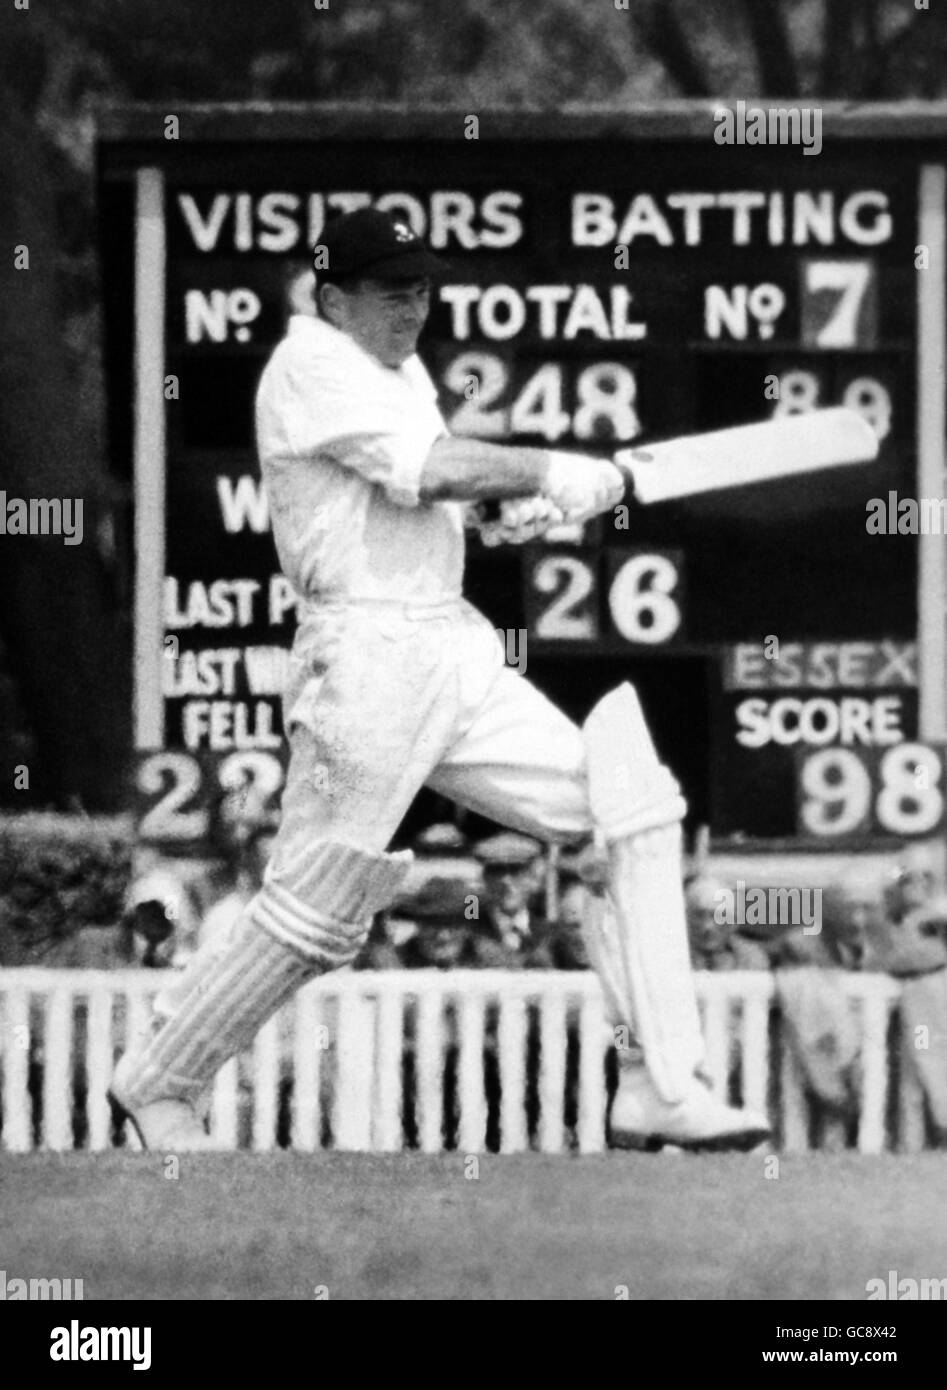 cricket - Essex contra Sudáfrica - Sudáfrica en Inglaterra 1960 - Día Dos - Valentine's Park, Ilford. Jonathan Fellows-Smith en buena acción mientras barre una pelota Foto de stock